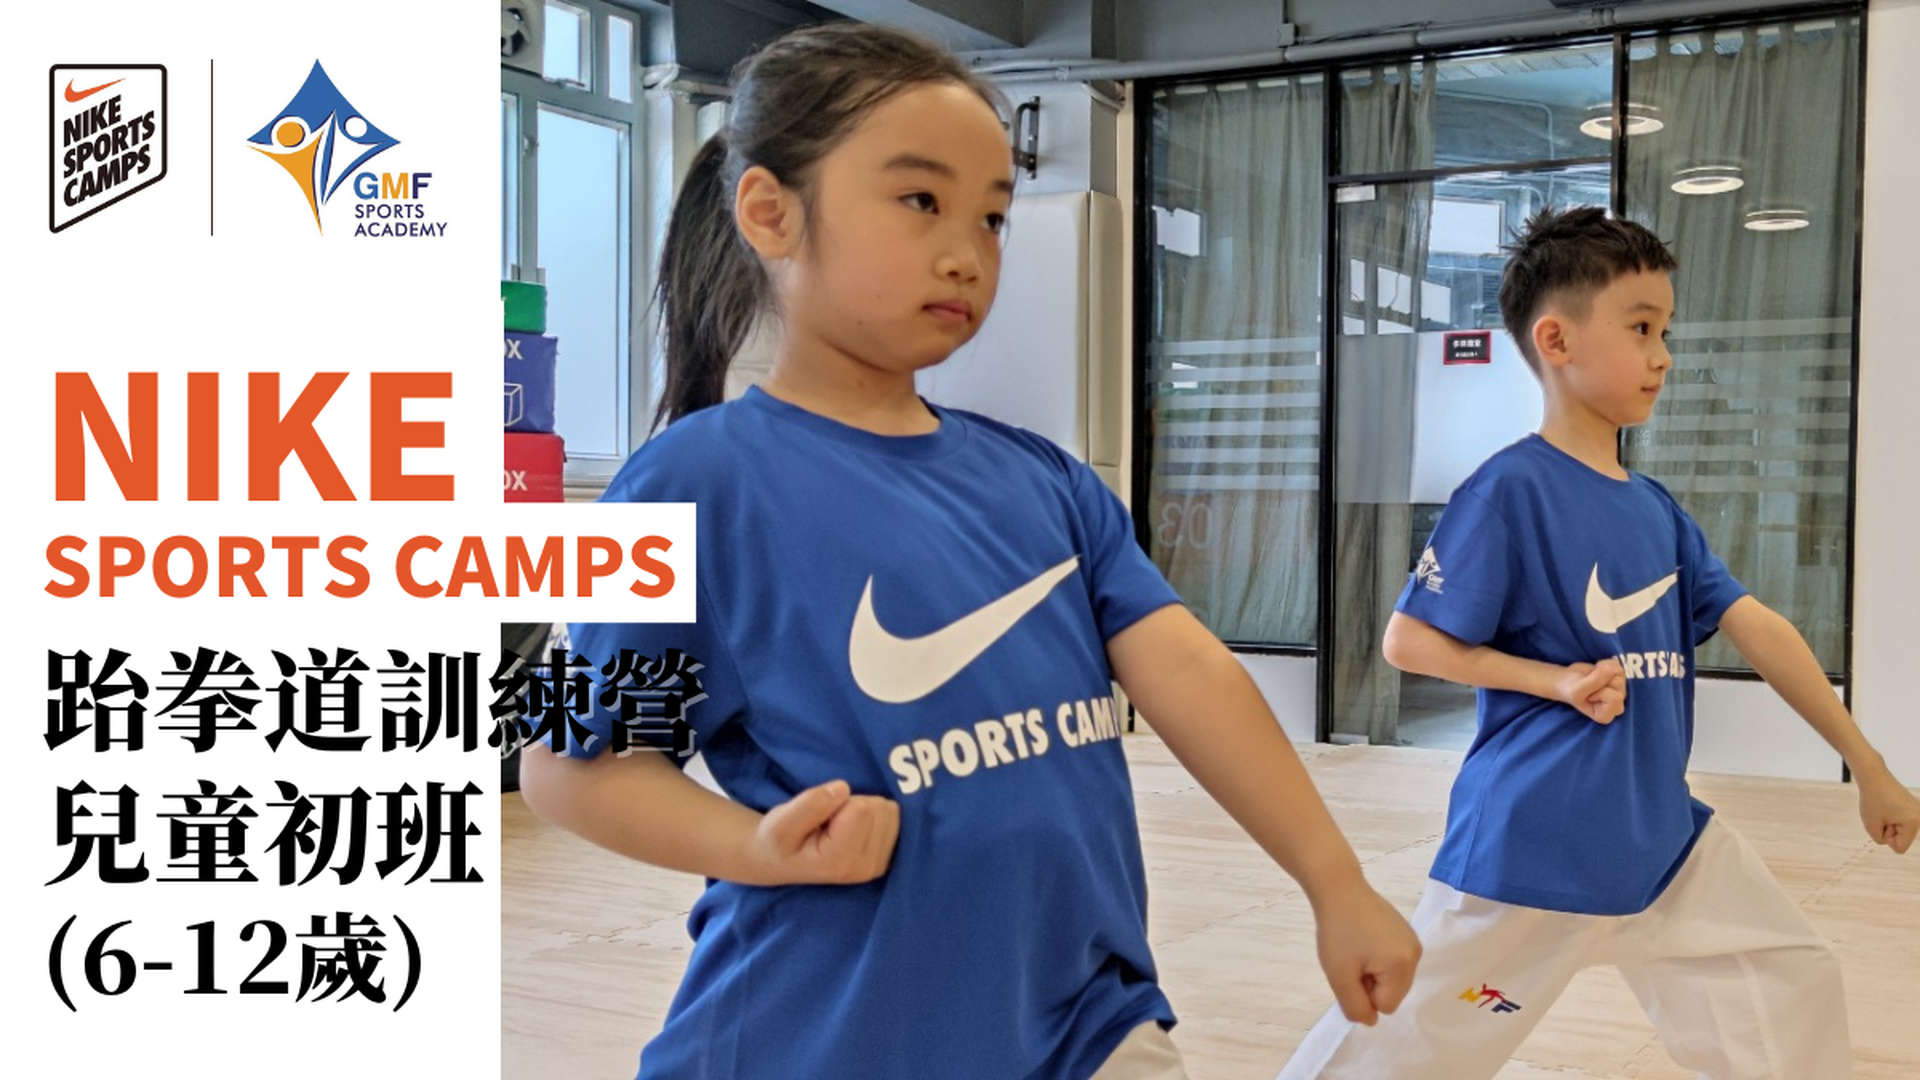 NIKE SPORTS CAMPS 跆拳道訓練營兒童初班 (6-12歲) 